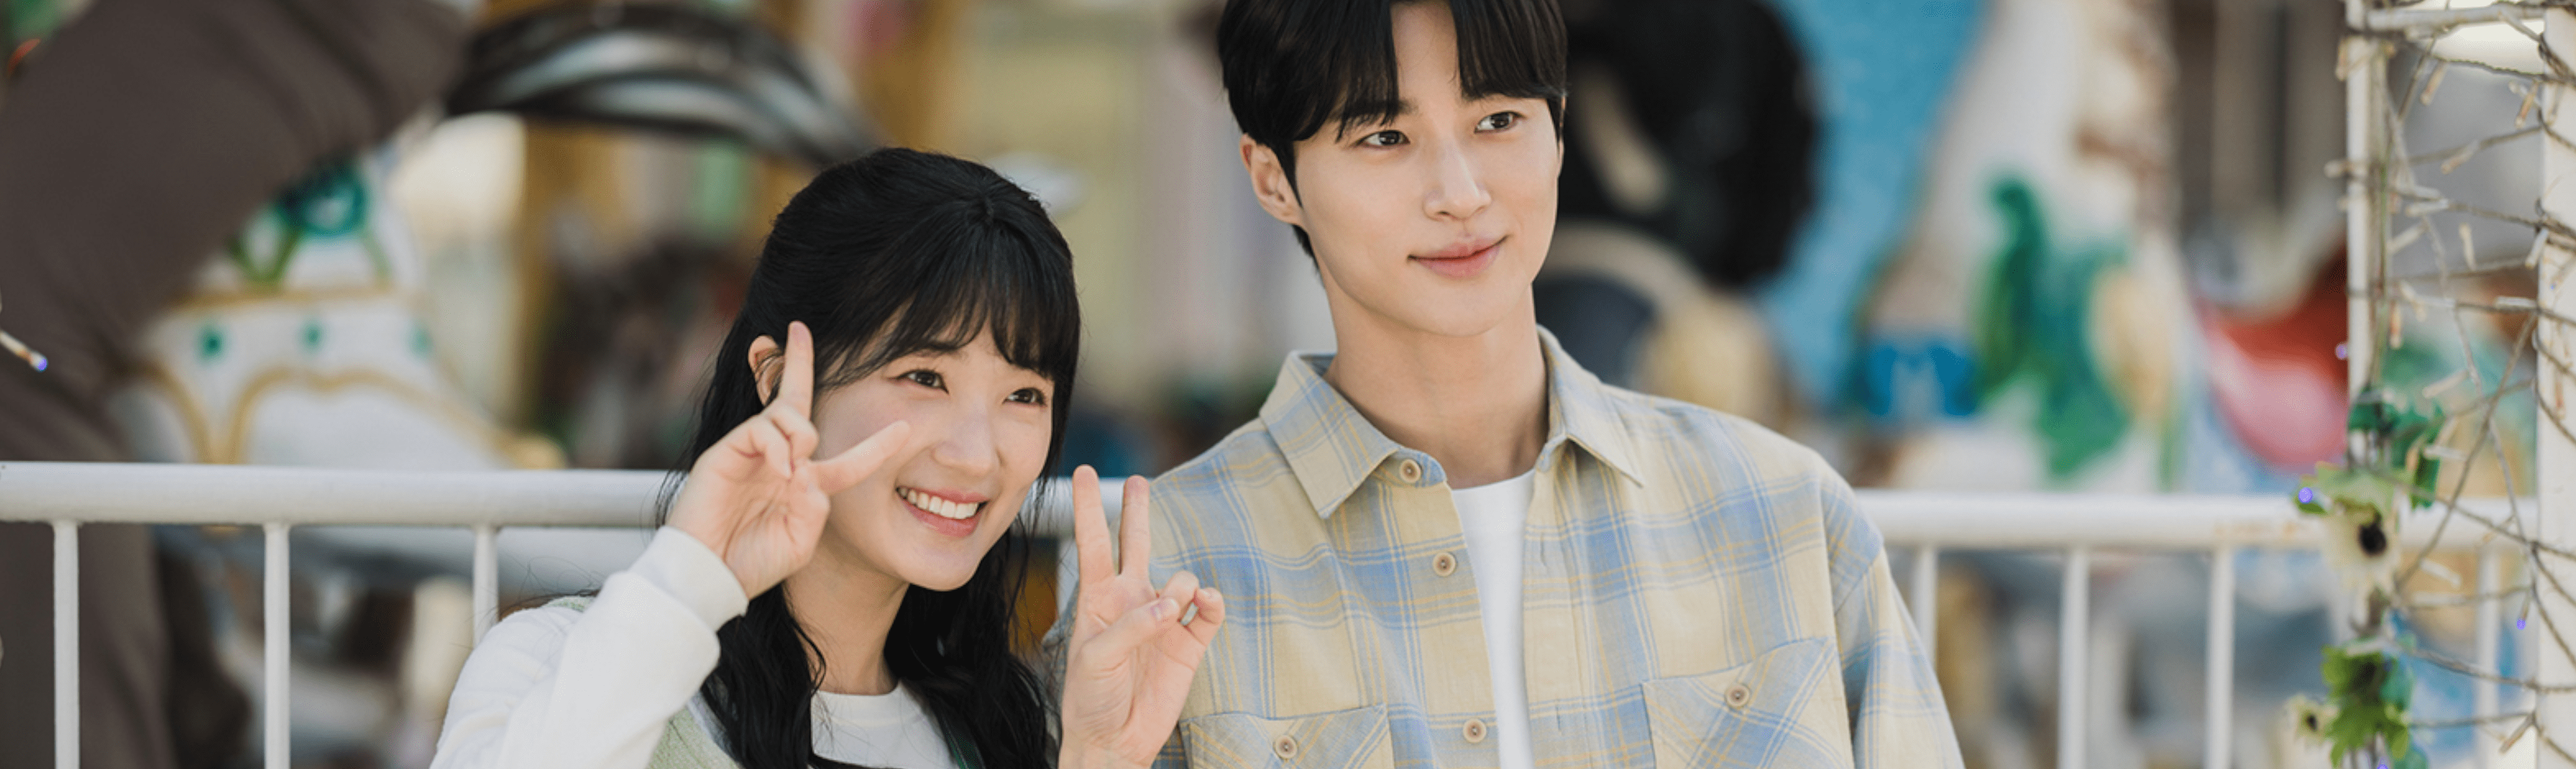 tvN Drama 'Lovely Runner' official still cut: couple